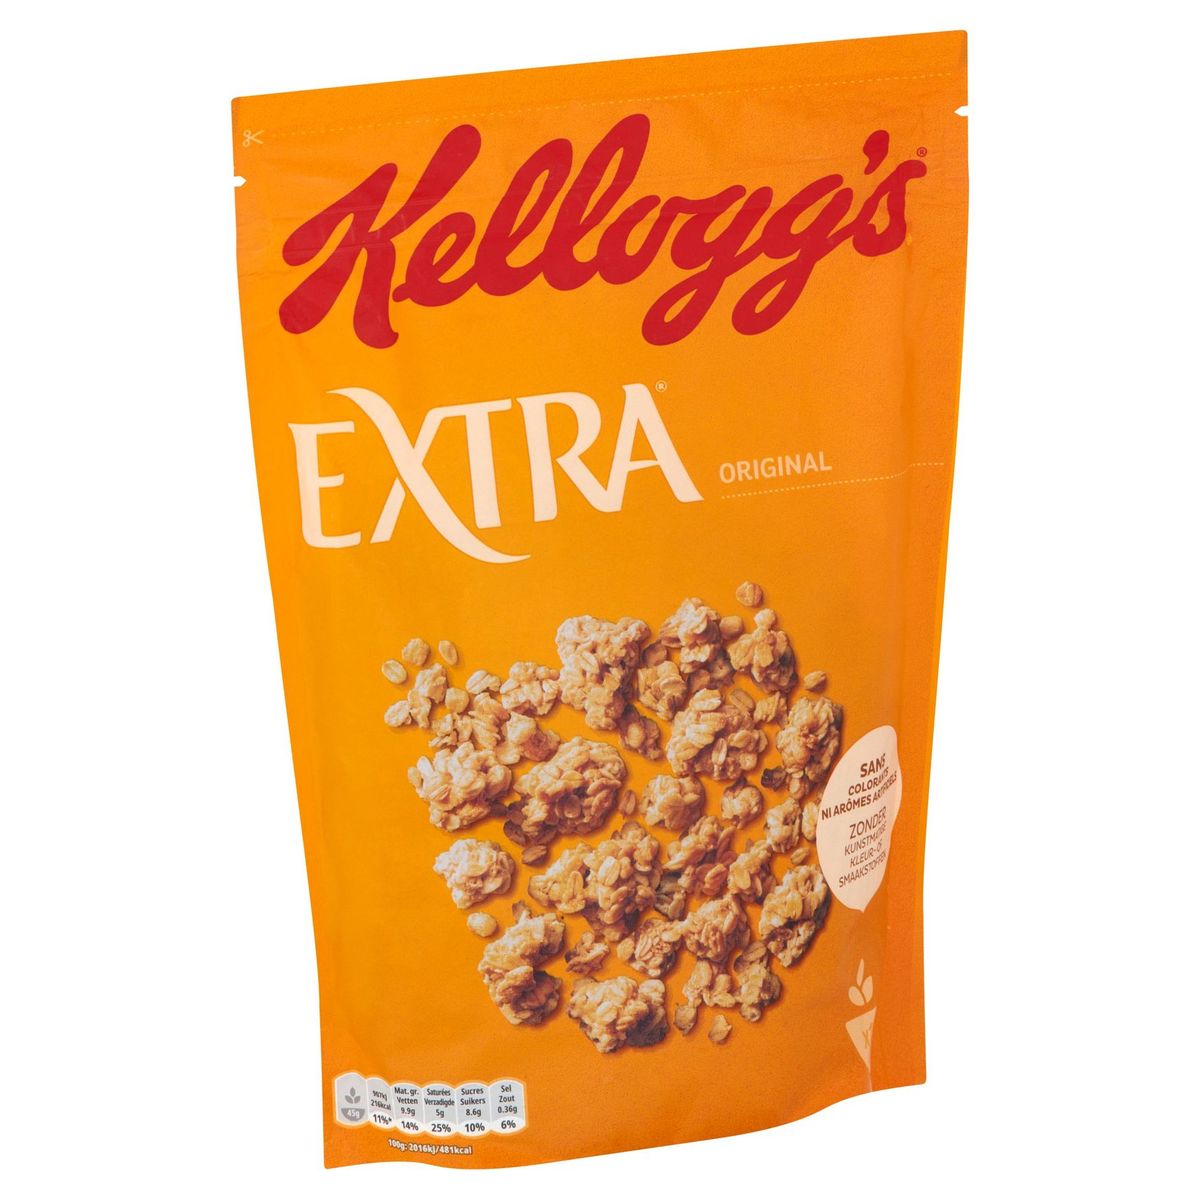 Kellogg's Extra Original 500 g